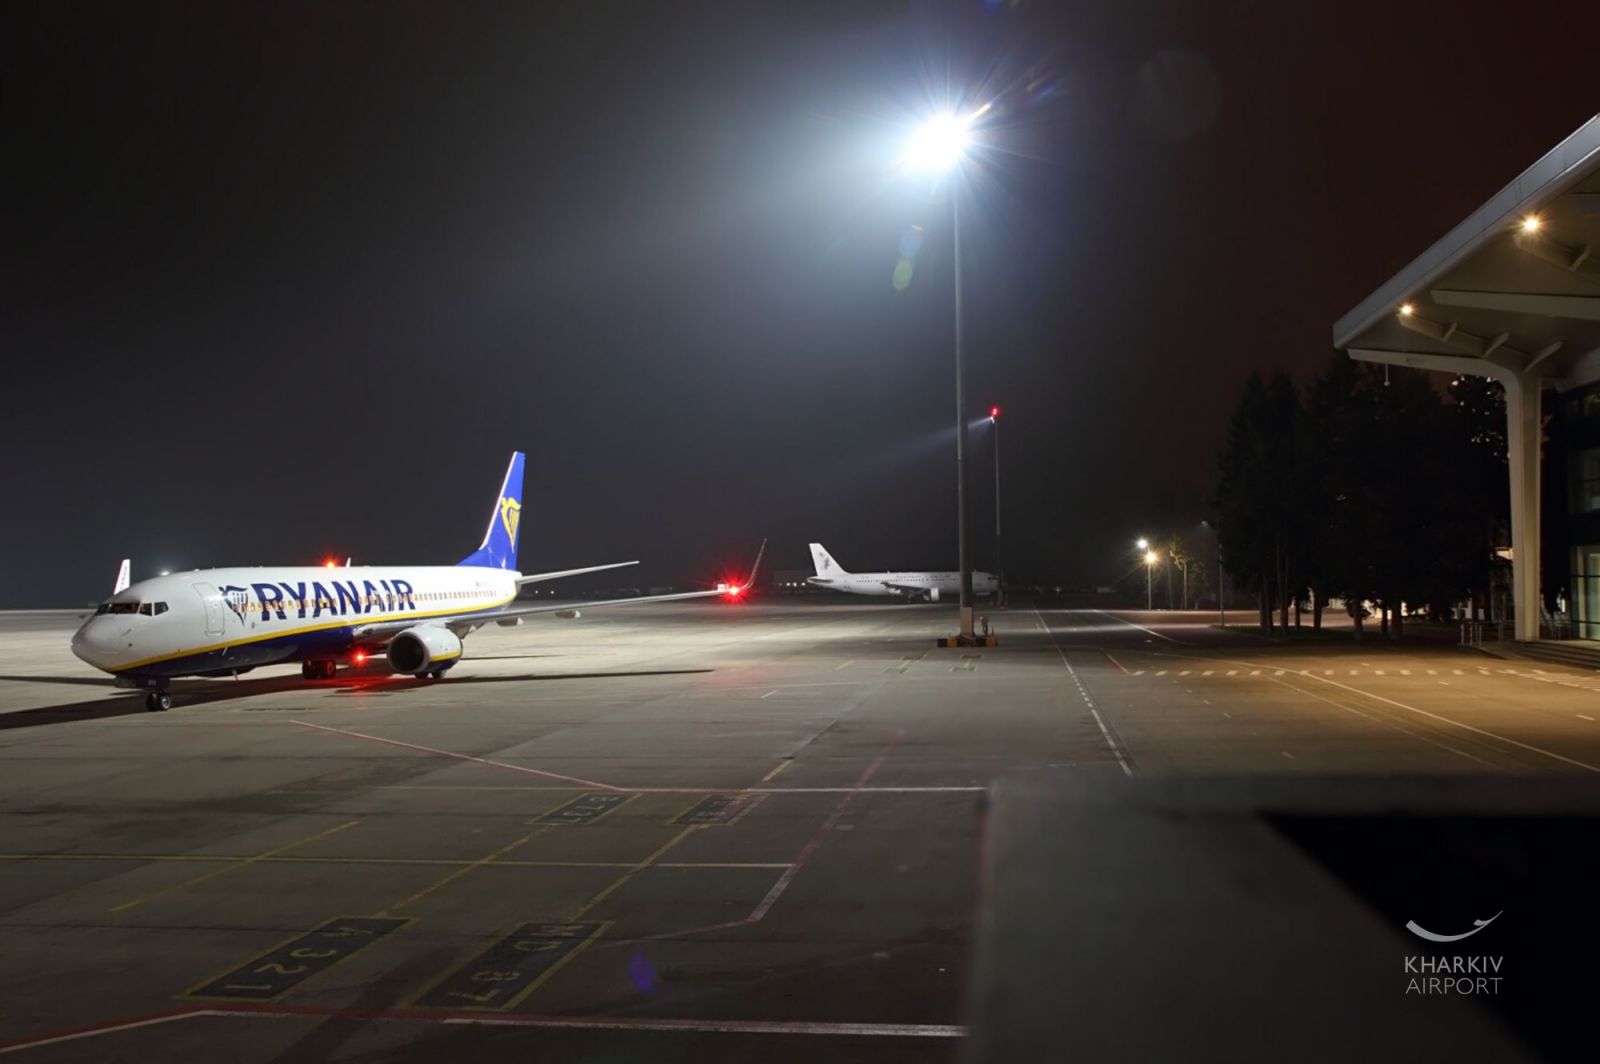 Аэропорт, управляемый компанией Ярославского, и крупнейший лоукост Ryanair установили прямое сообщение между Харьковом и Будапештом